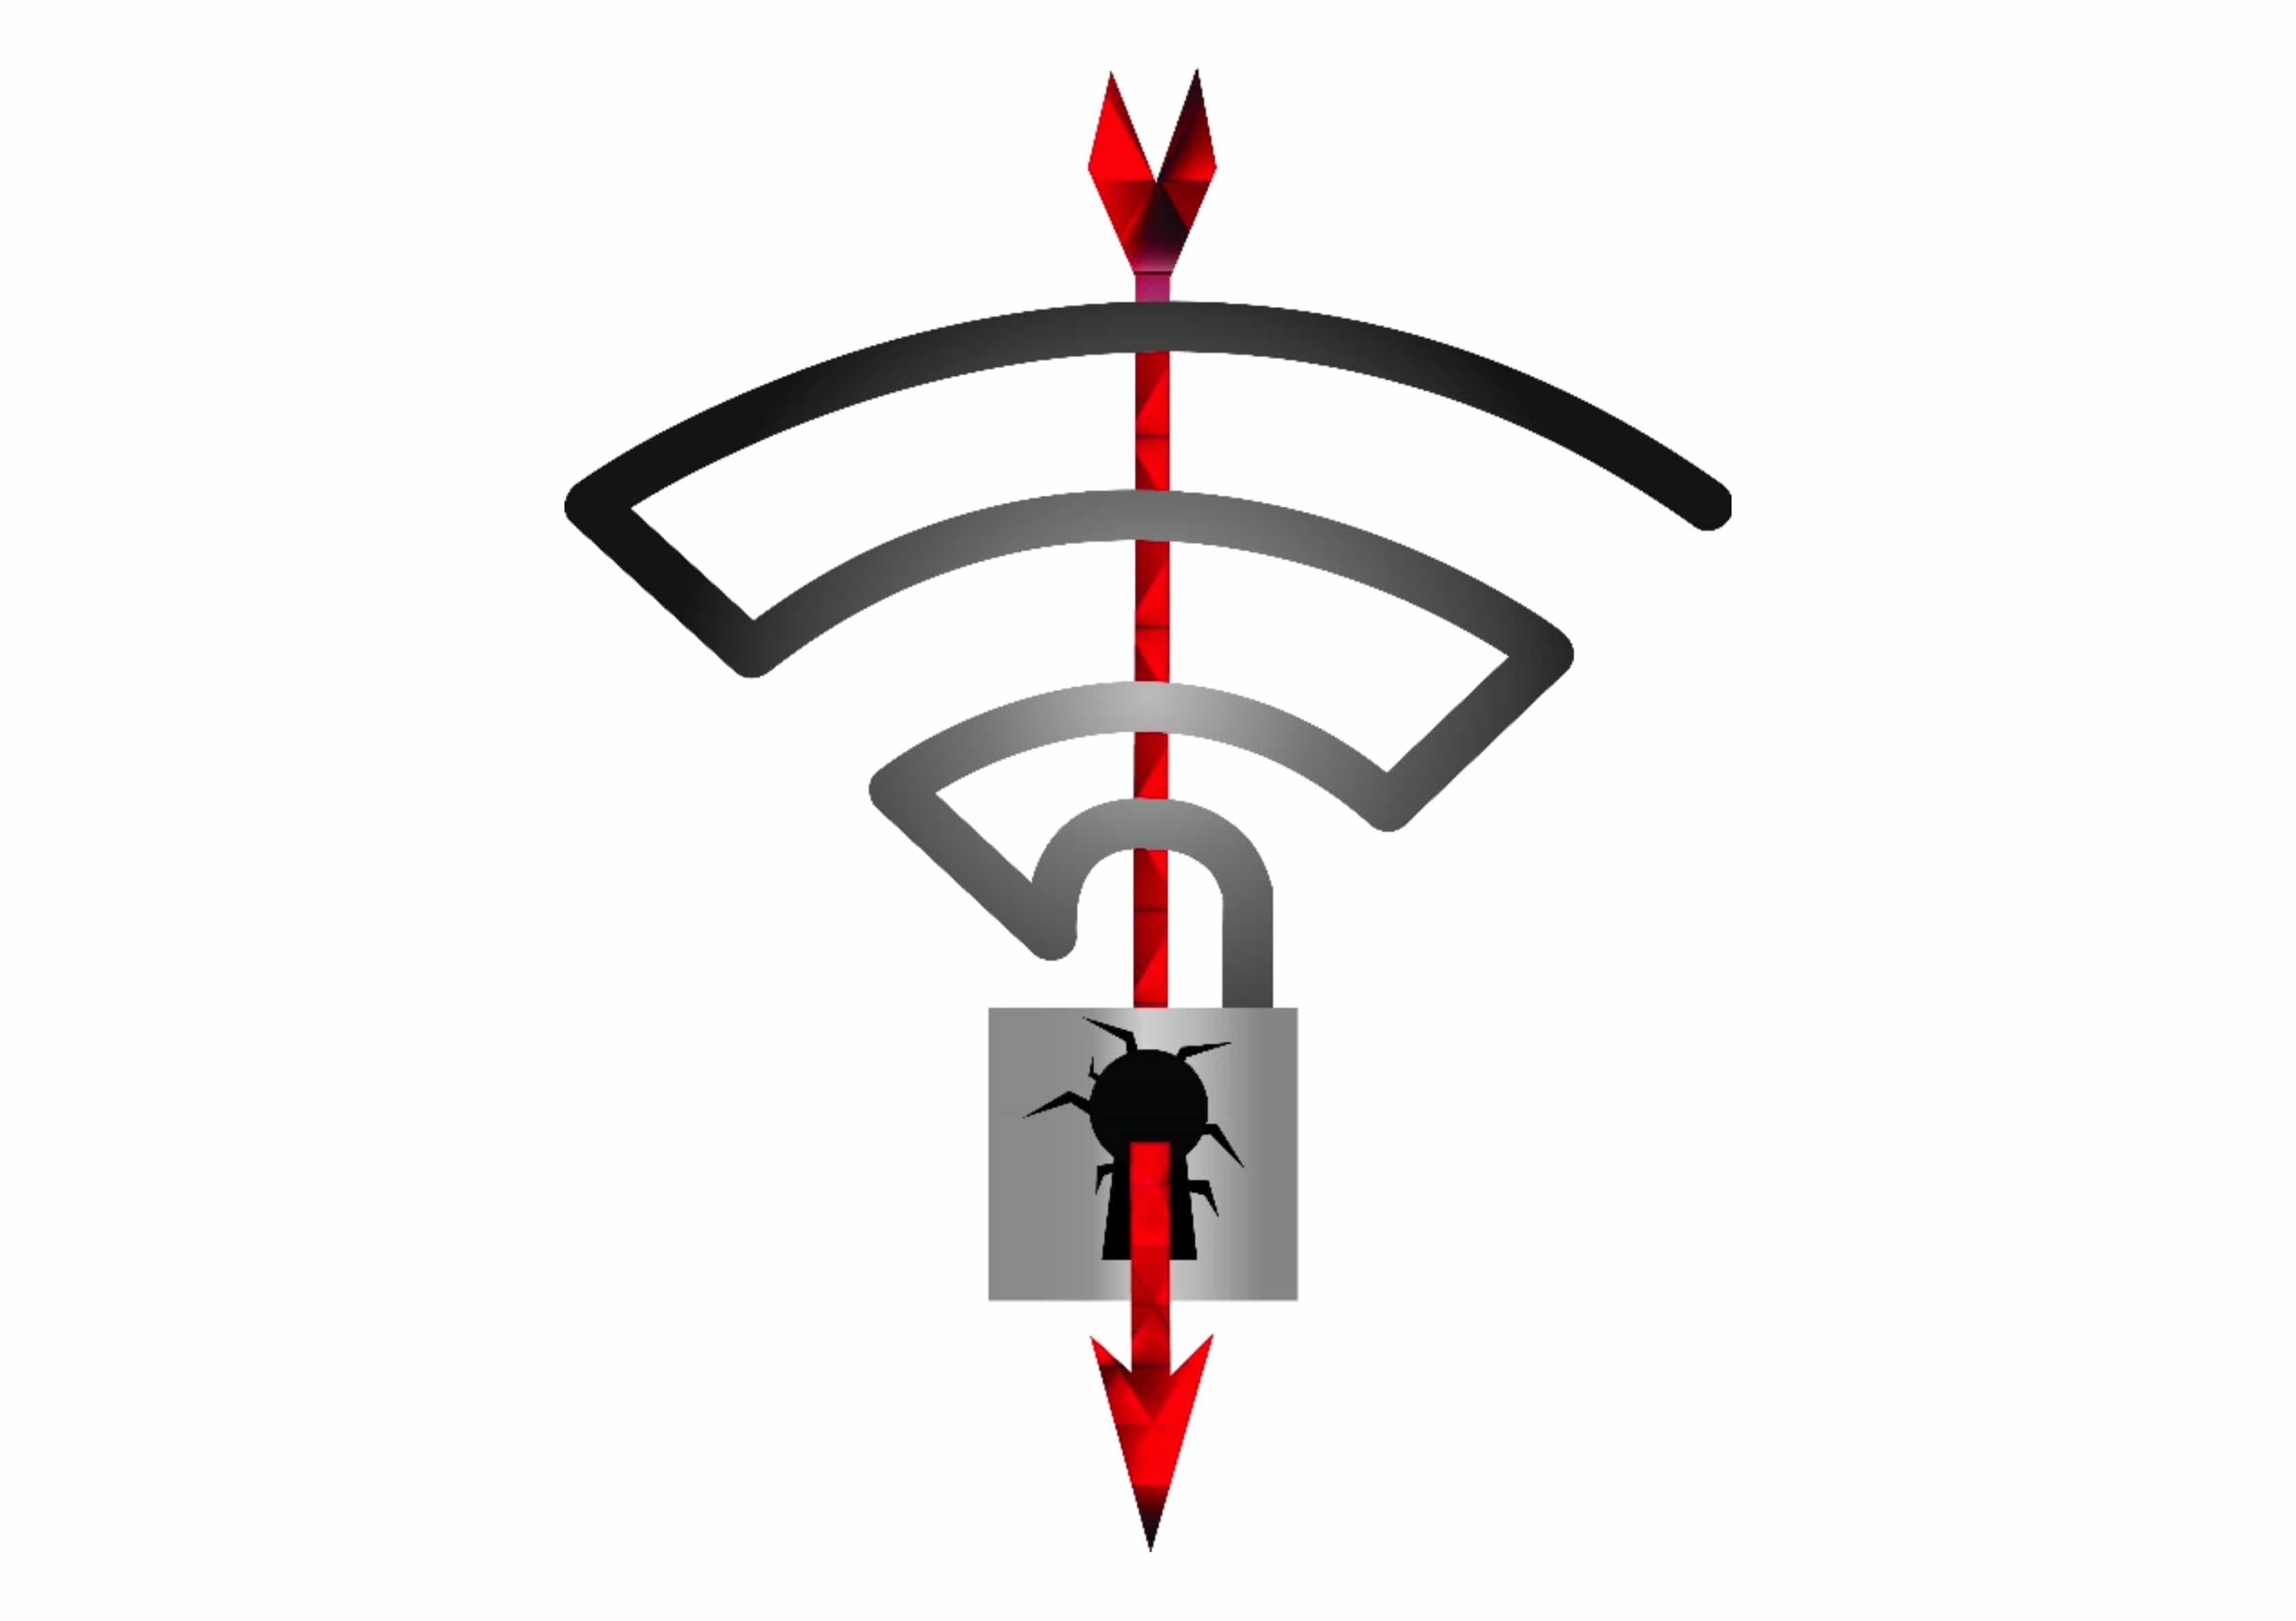 KRACK Wi-Fi attack